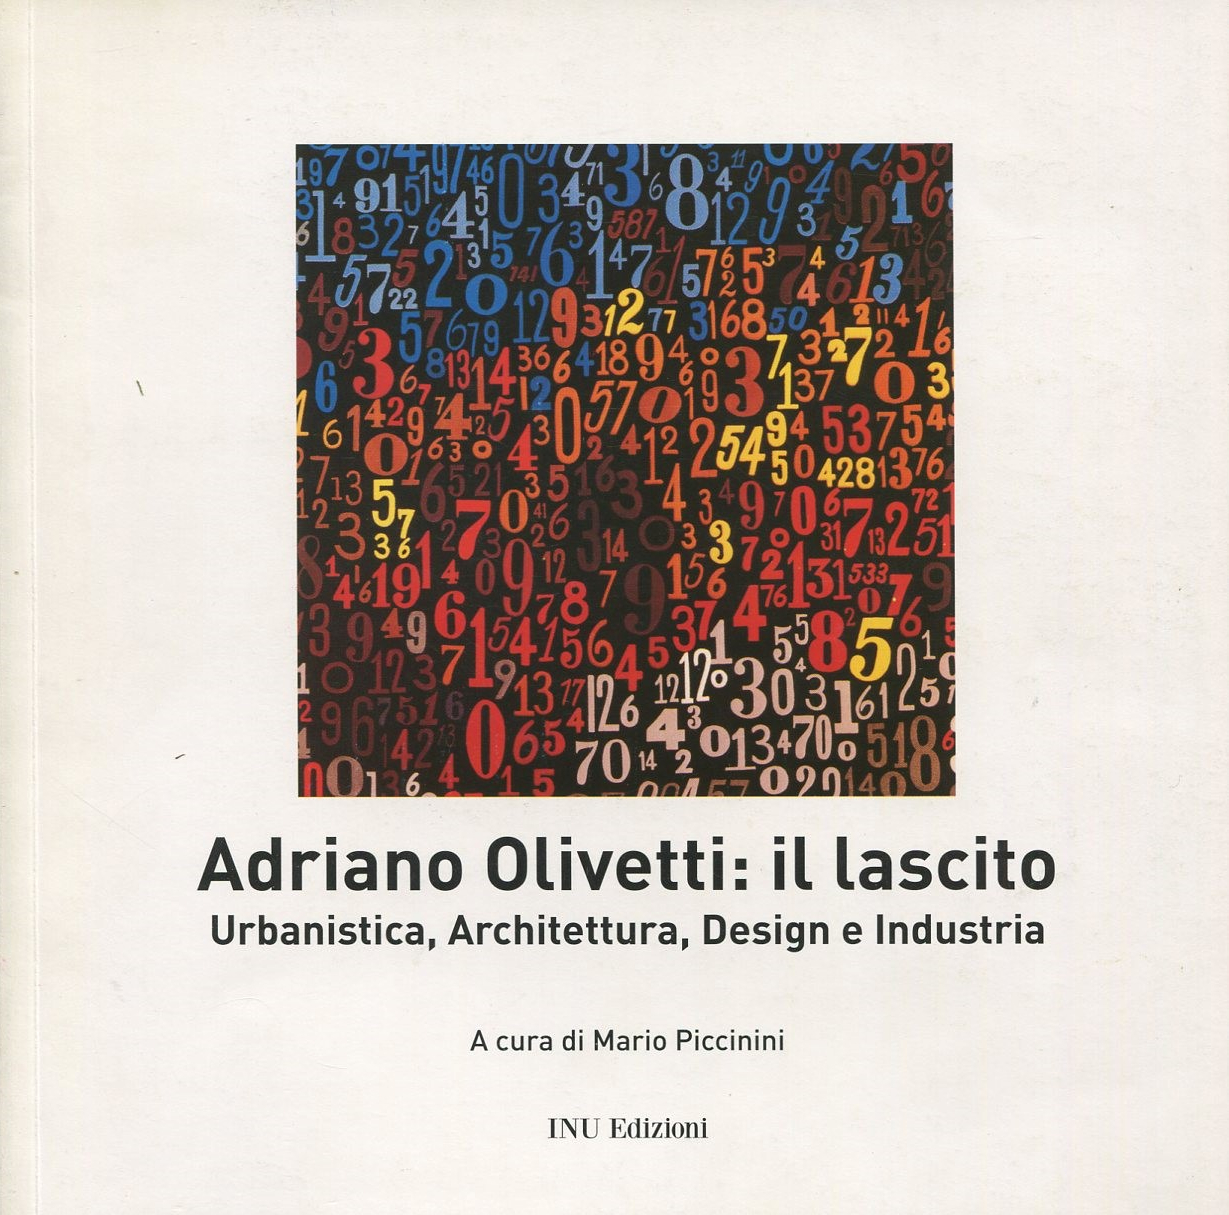 Adriano Olivetti: il lascito. Urbanistica, Architettura, Design e Industria